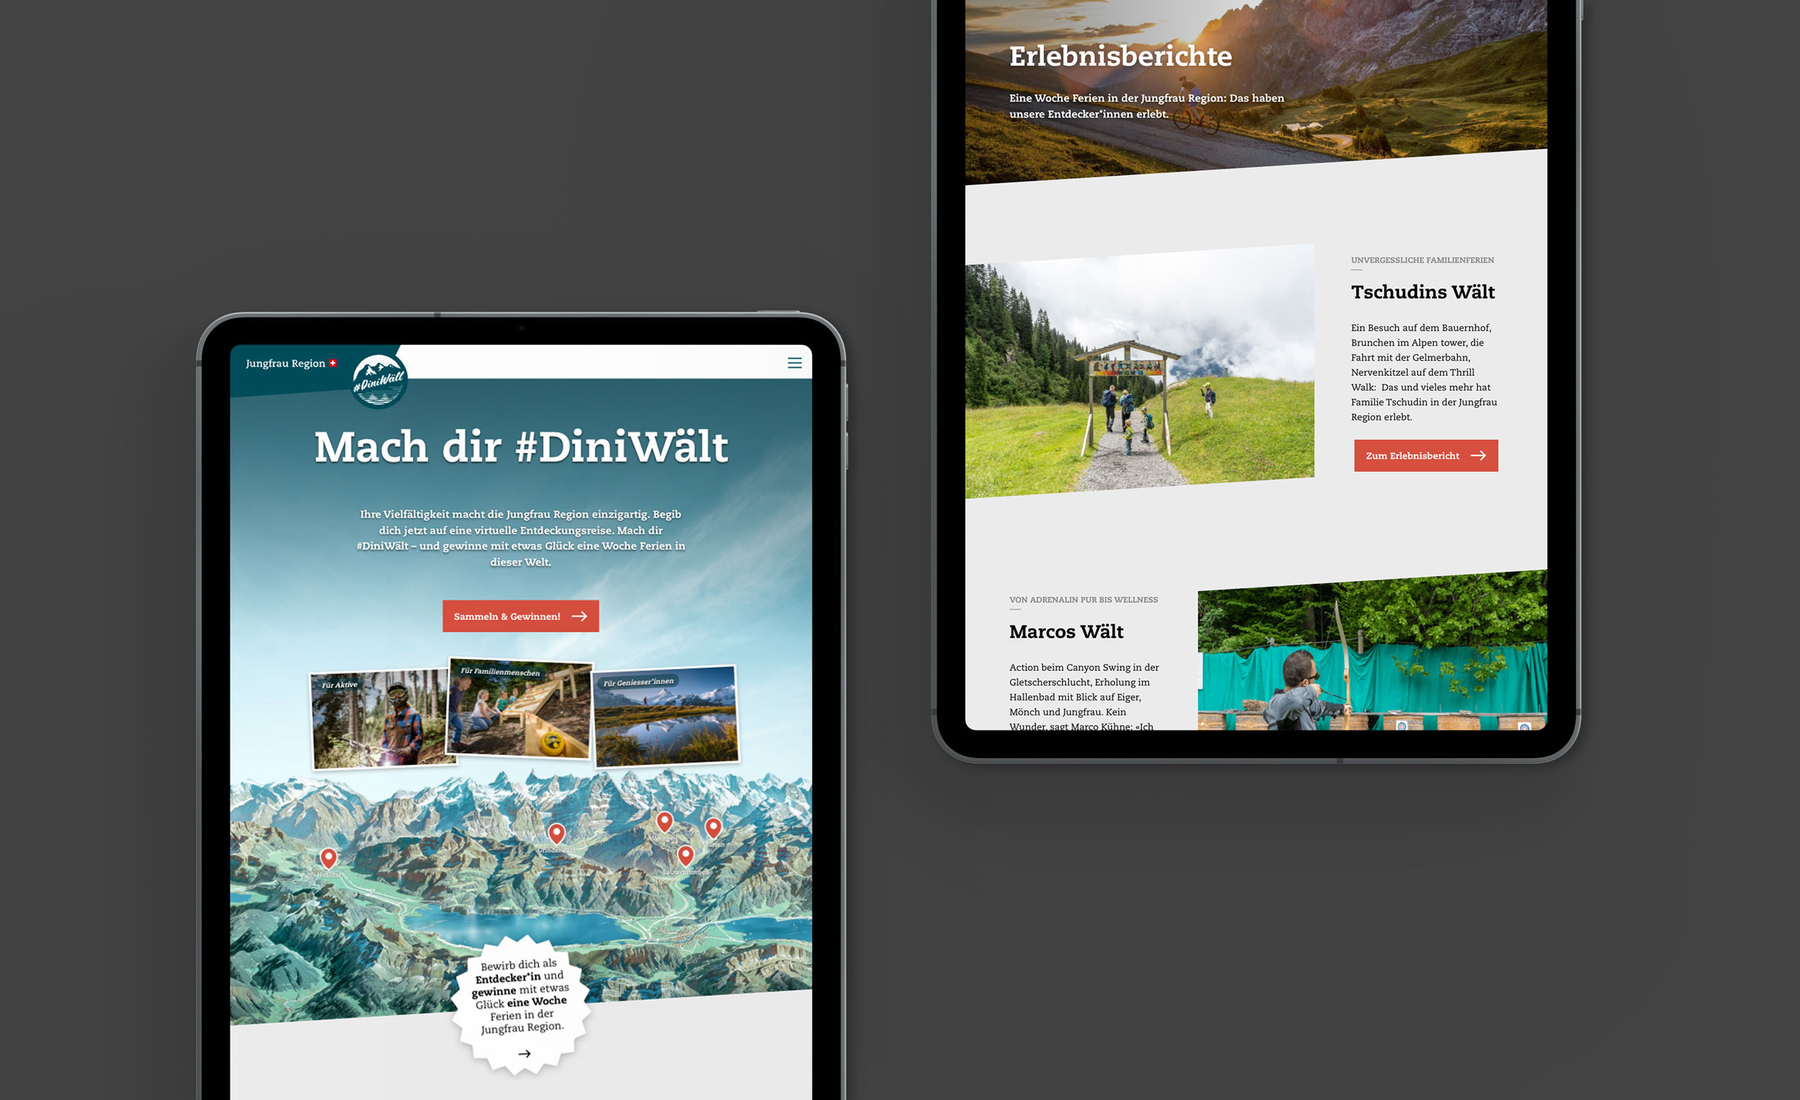 Die Website zur Kampagne #DiniWält der Jungfrau-Region. Unter dem Titel «Mach dir #DiniWält lädt sie zu einer virtuellen Entdeckungsreise ein.